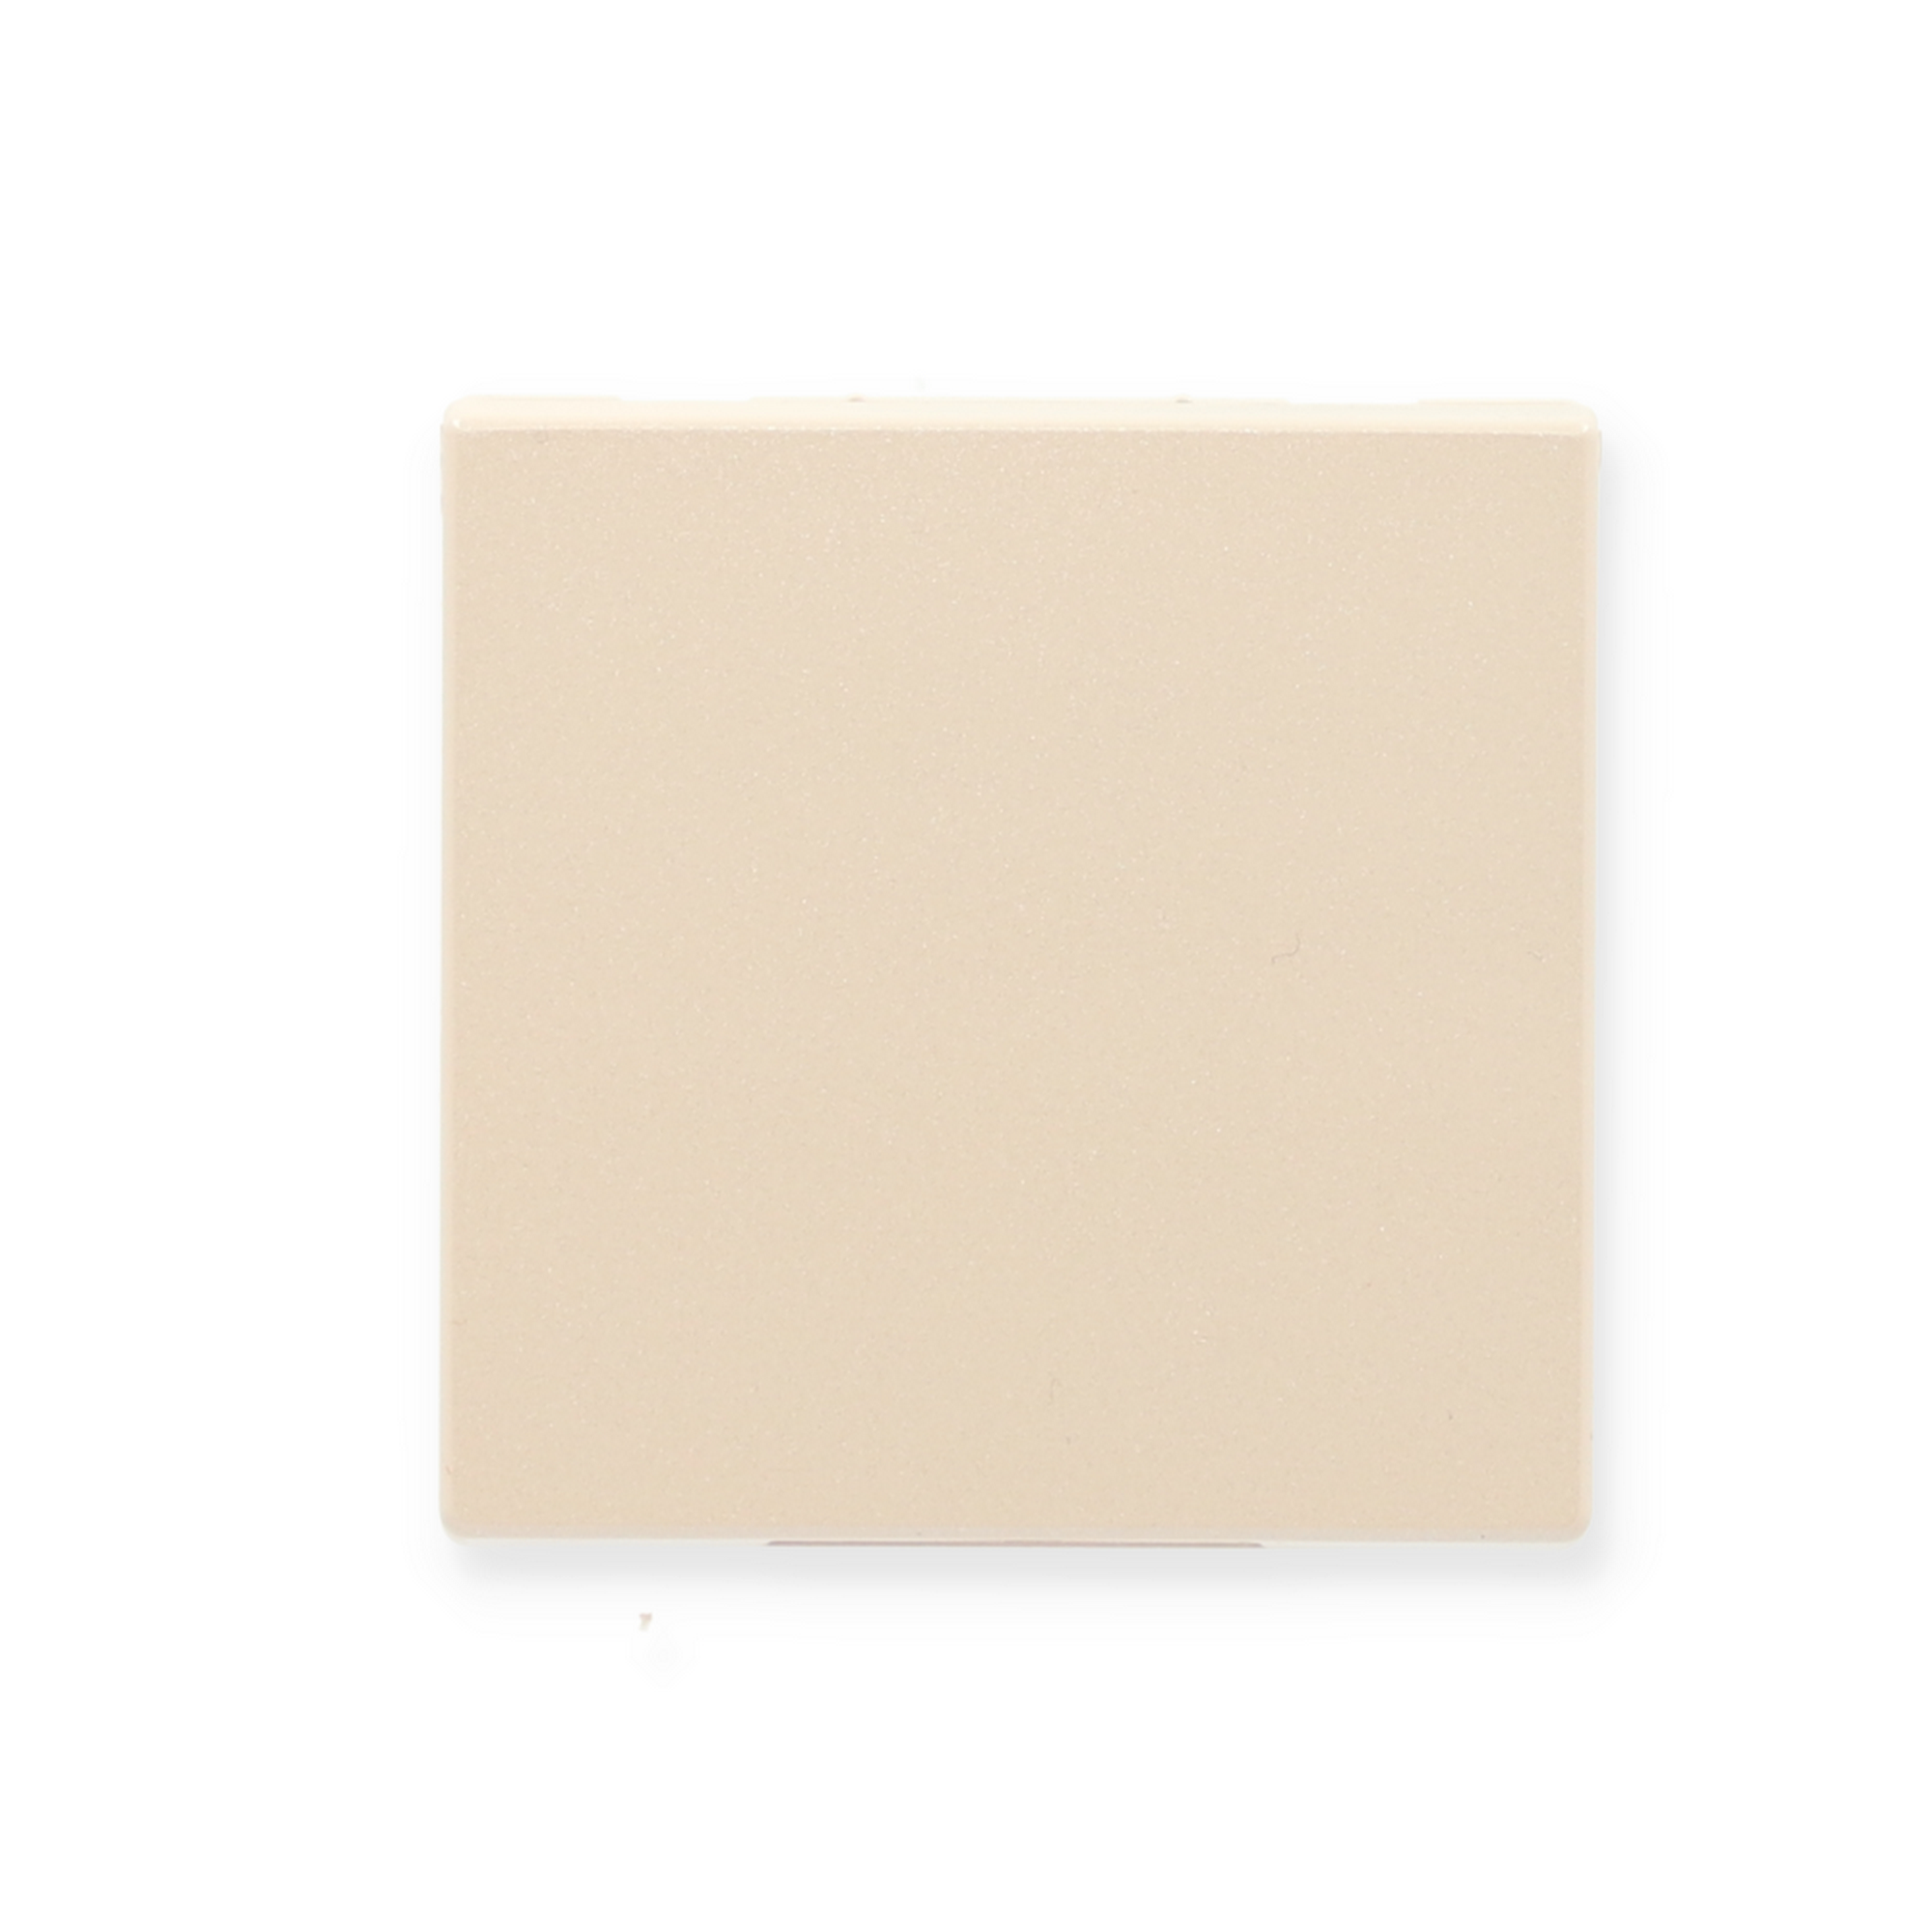 Steckdoseneinsatz mit Klappdeckel beige 7,1 x 7,1 cm + product picture